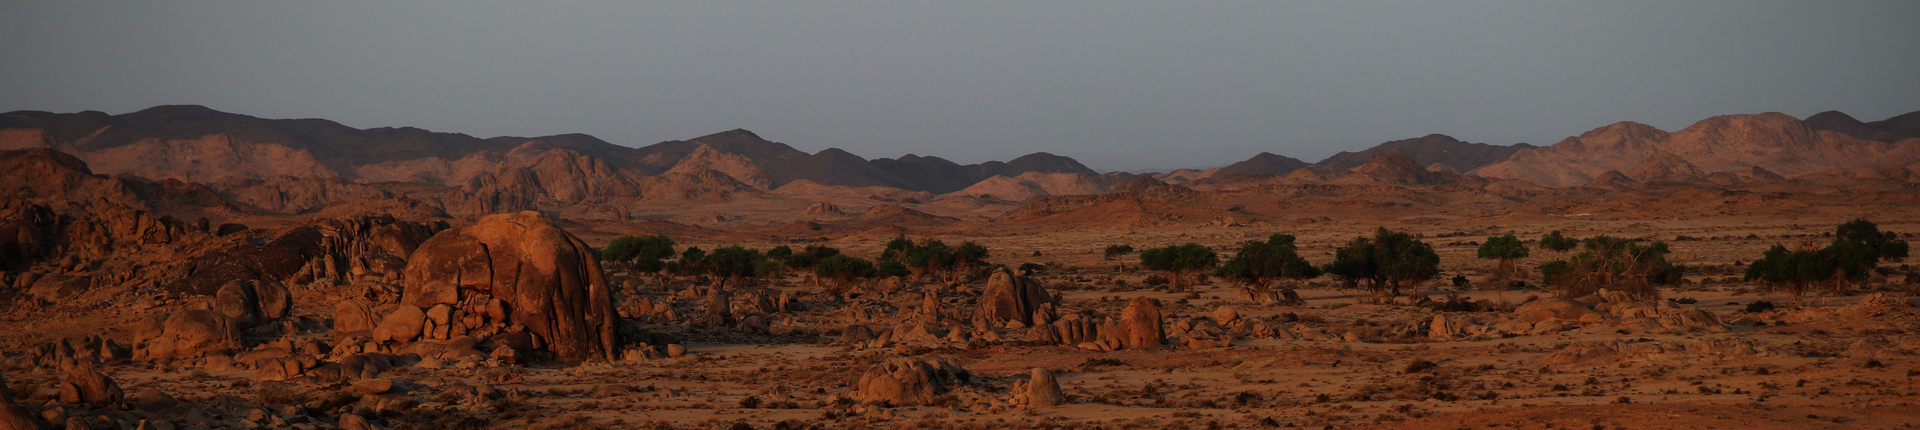 Desert Gobi Photo: J. Wunderlich